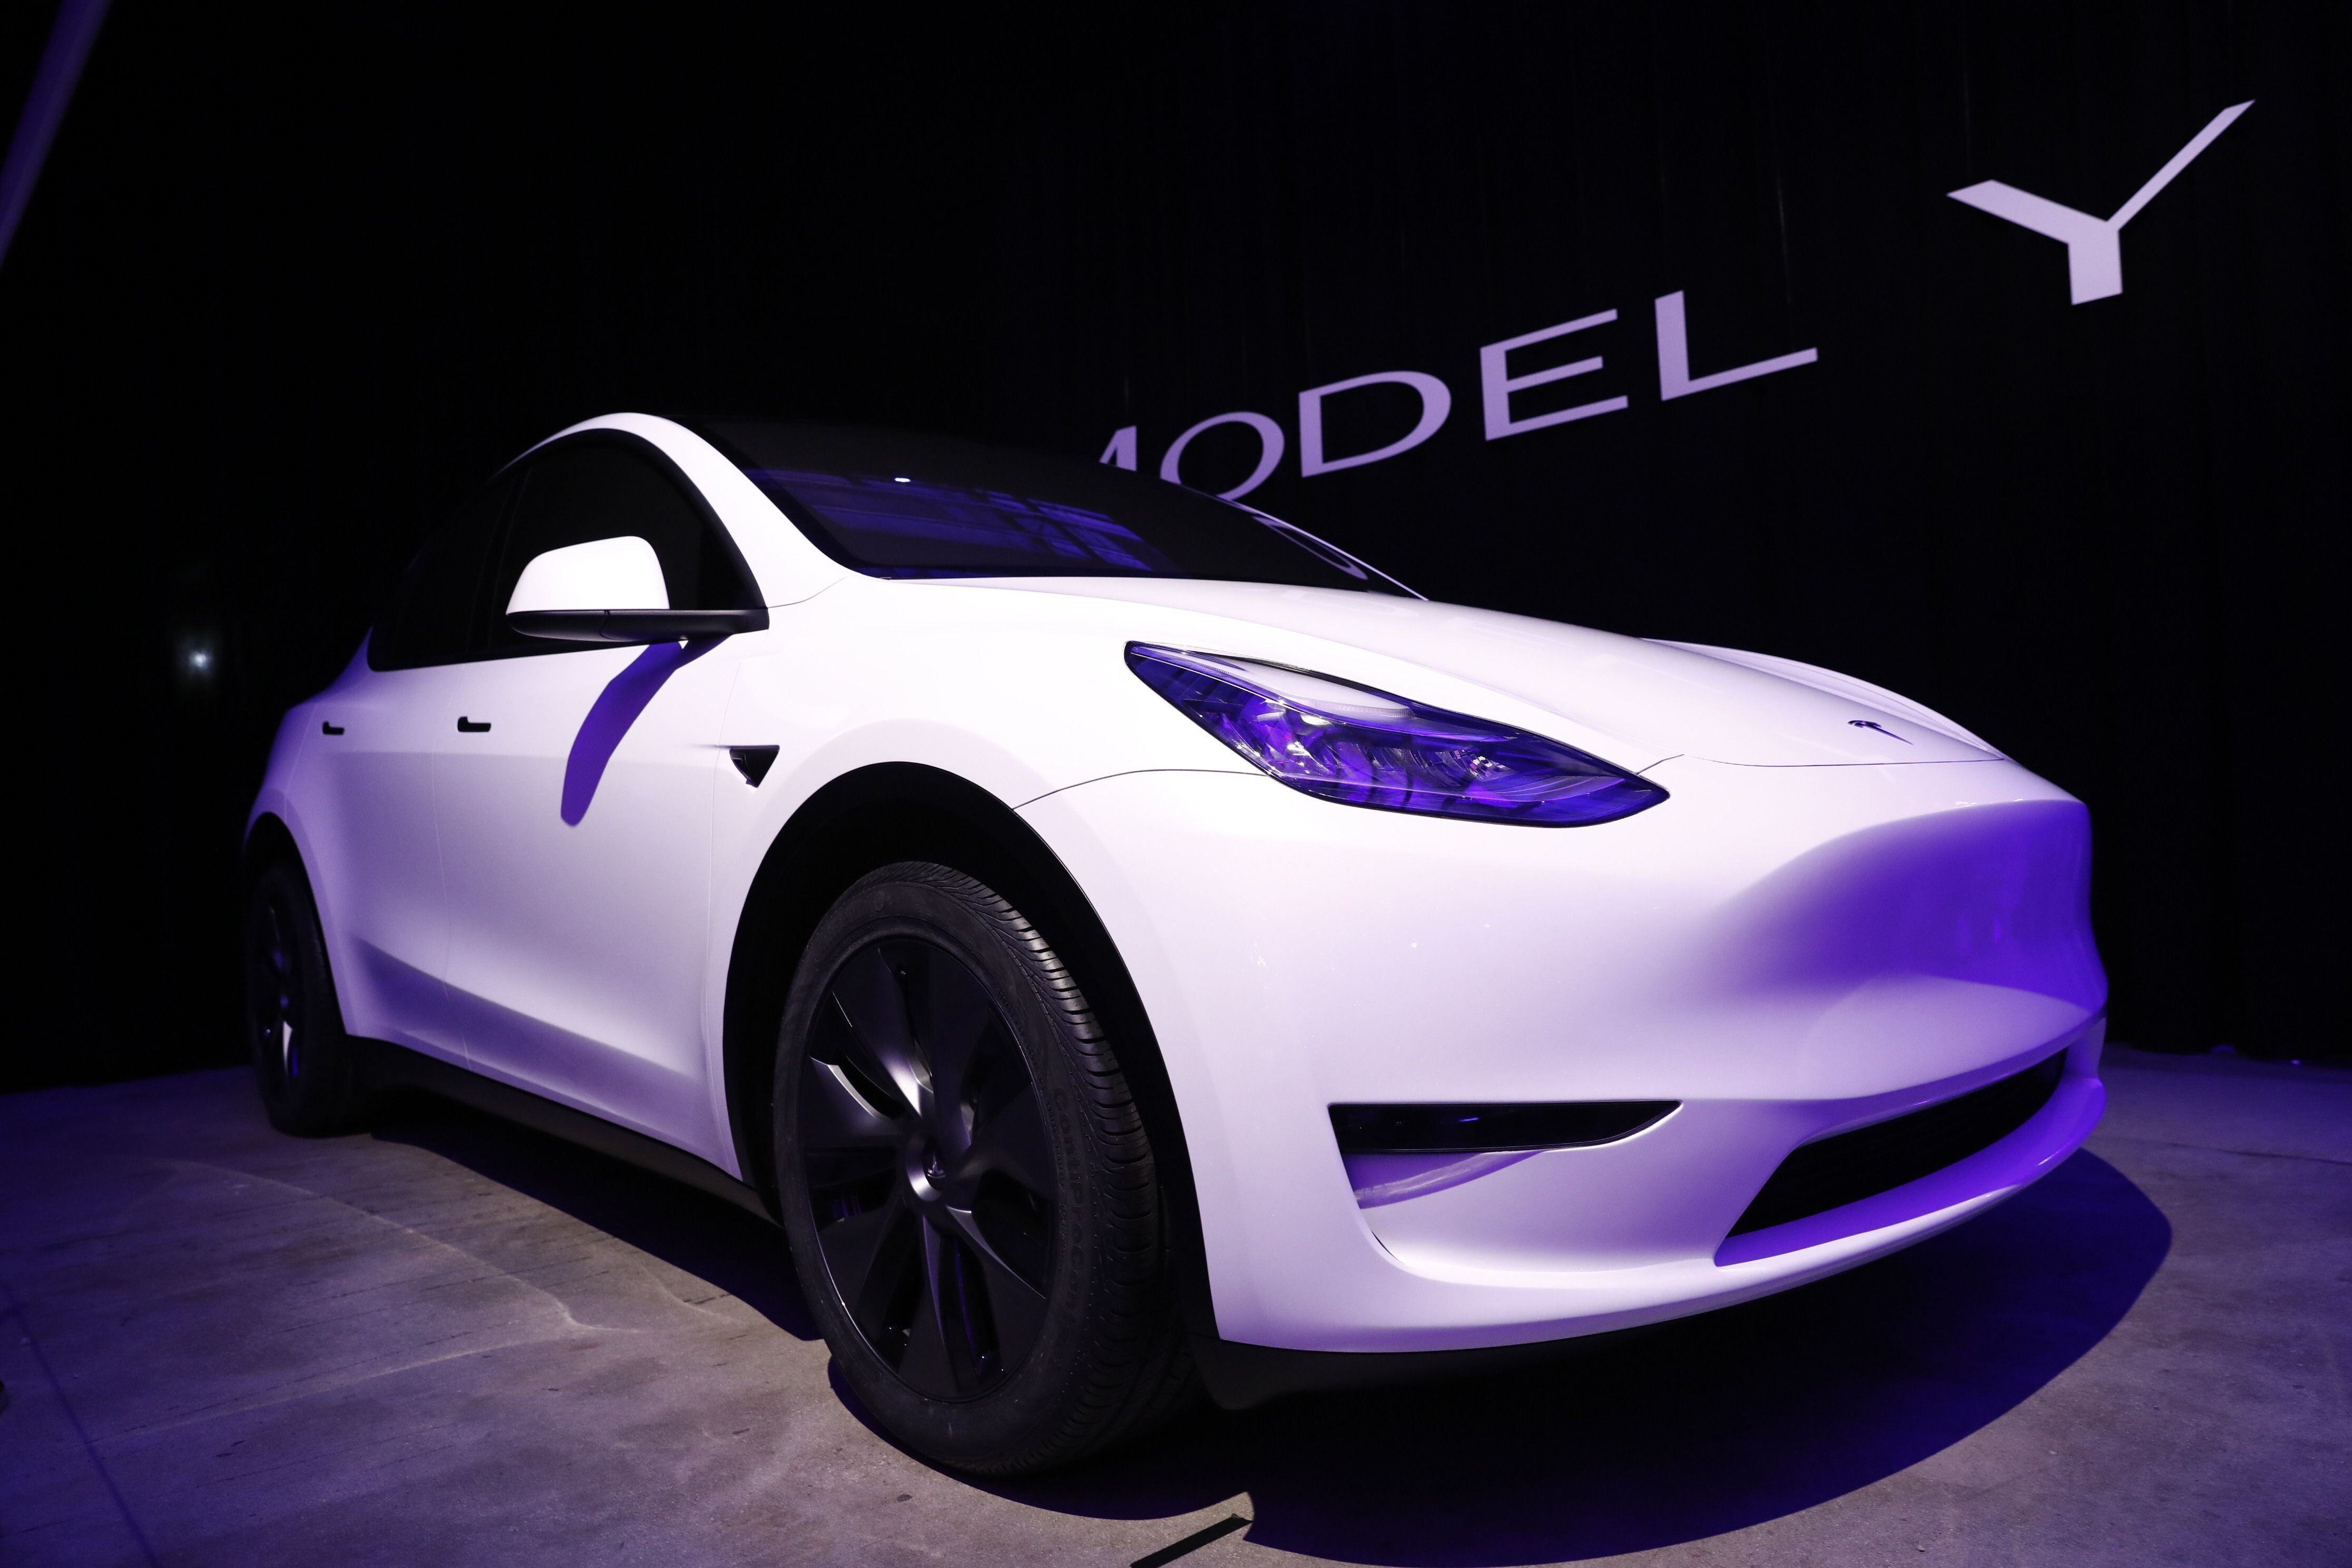 Bajar los precios fue una de las claves, pero el formato, segmento y equipamiento también fueron importantes para que el Tesla Model Y sea el auto más vendido entre todas las tecnologías durante los primeros 3 meses en Europa